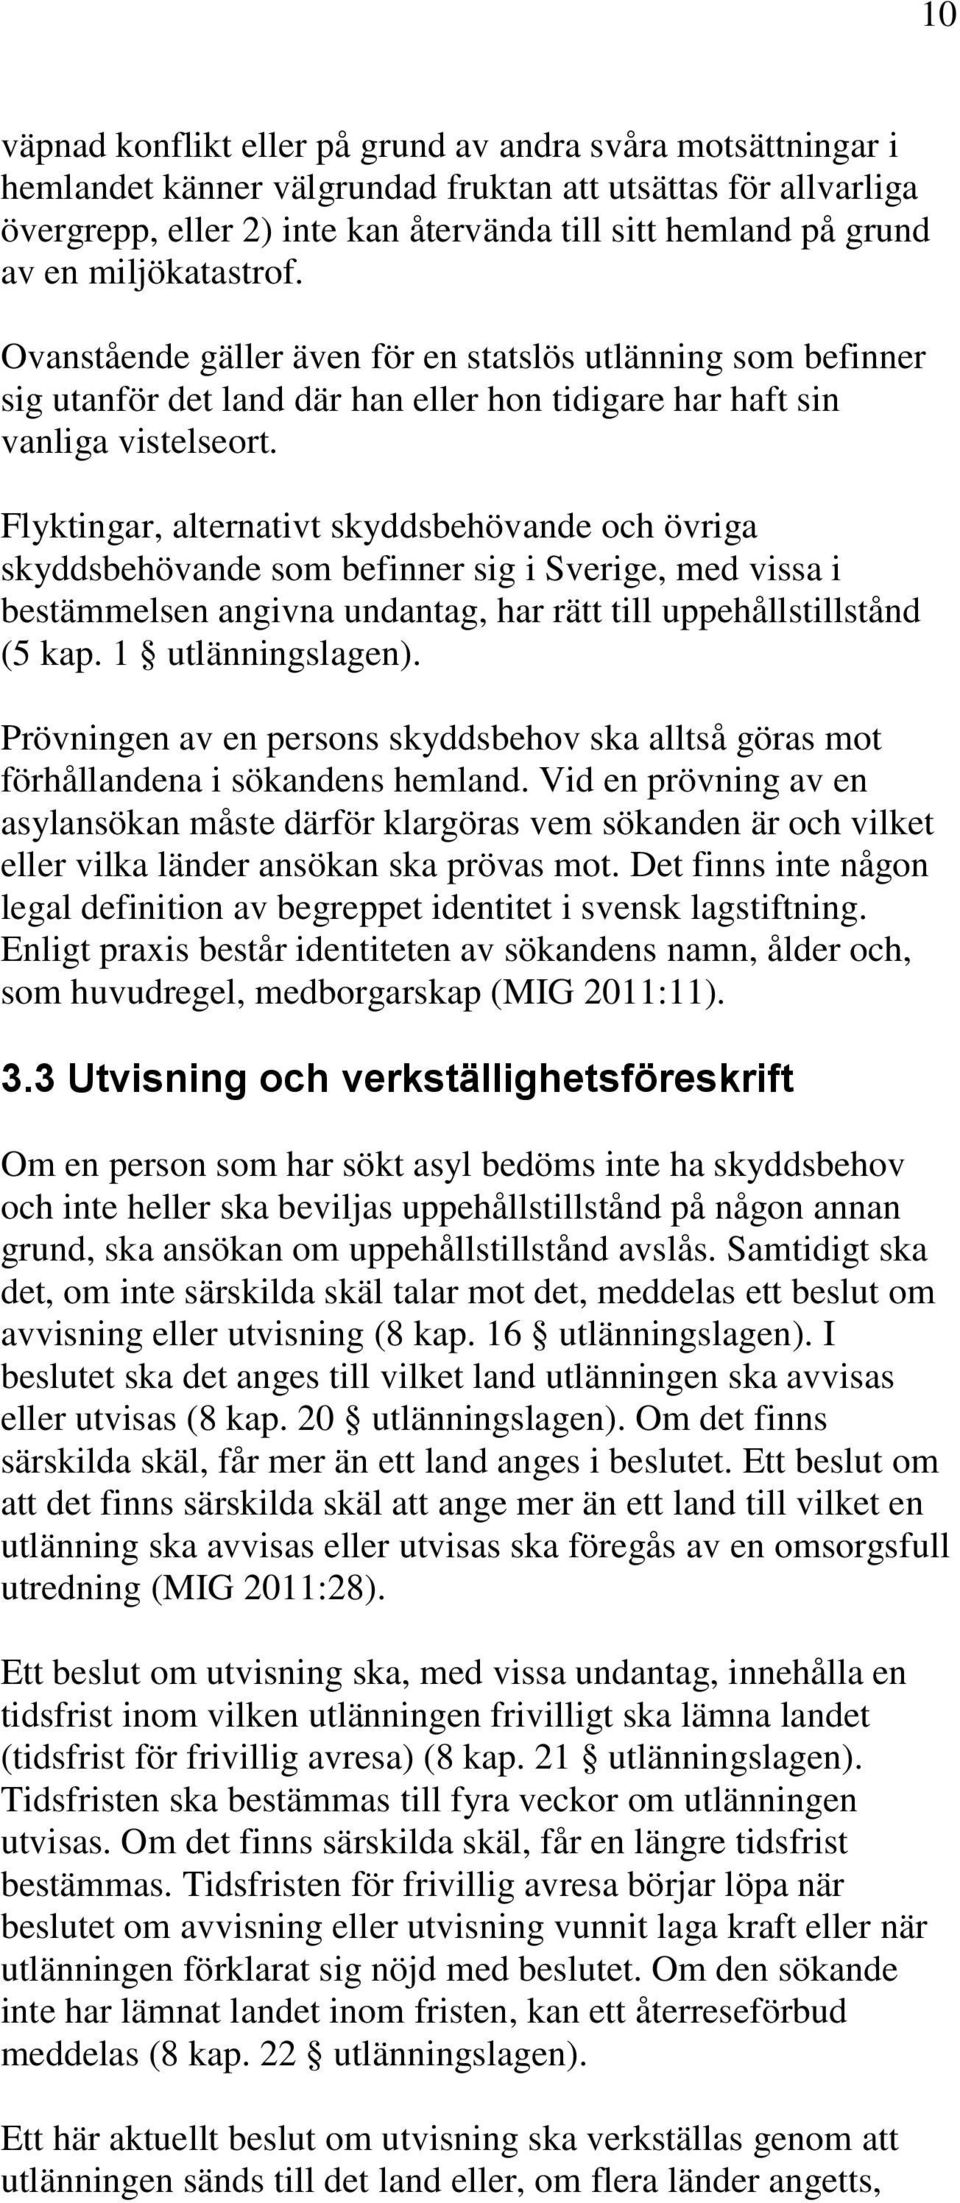 Flyktingar, alternativt skyddsbehövande och övriga skyddsbehövande som befinner sig i Sverige, med vissa i bestämmelsen angivna undantag, har rätt till uppehållstillstånd (5 kap. 1 utlänningslagen).